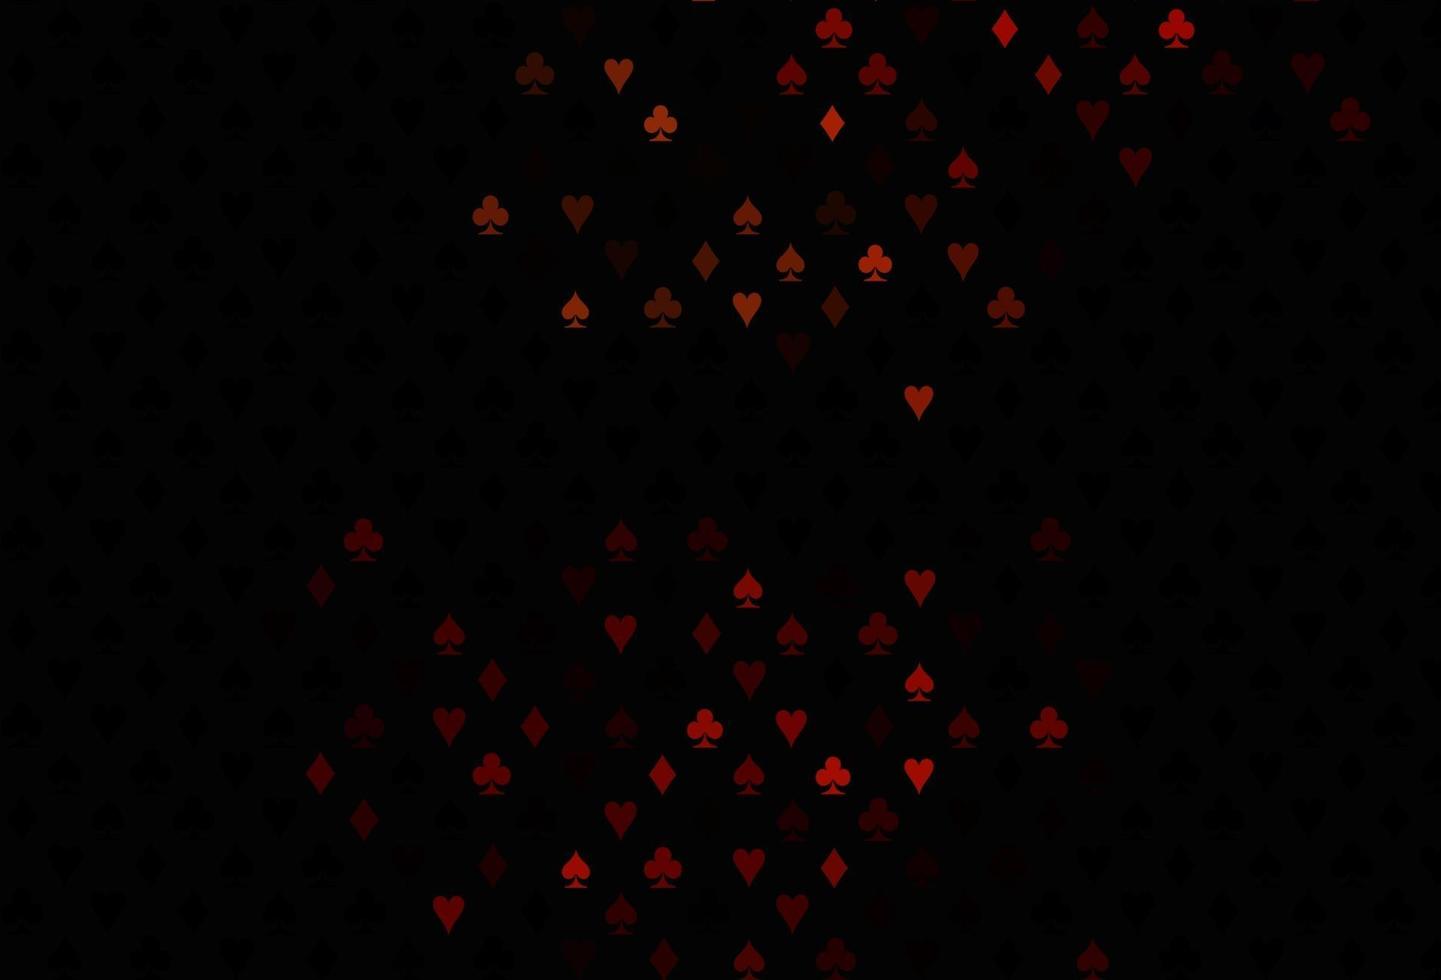 texture vecteur rouge foncé avec des cartes à jouer.